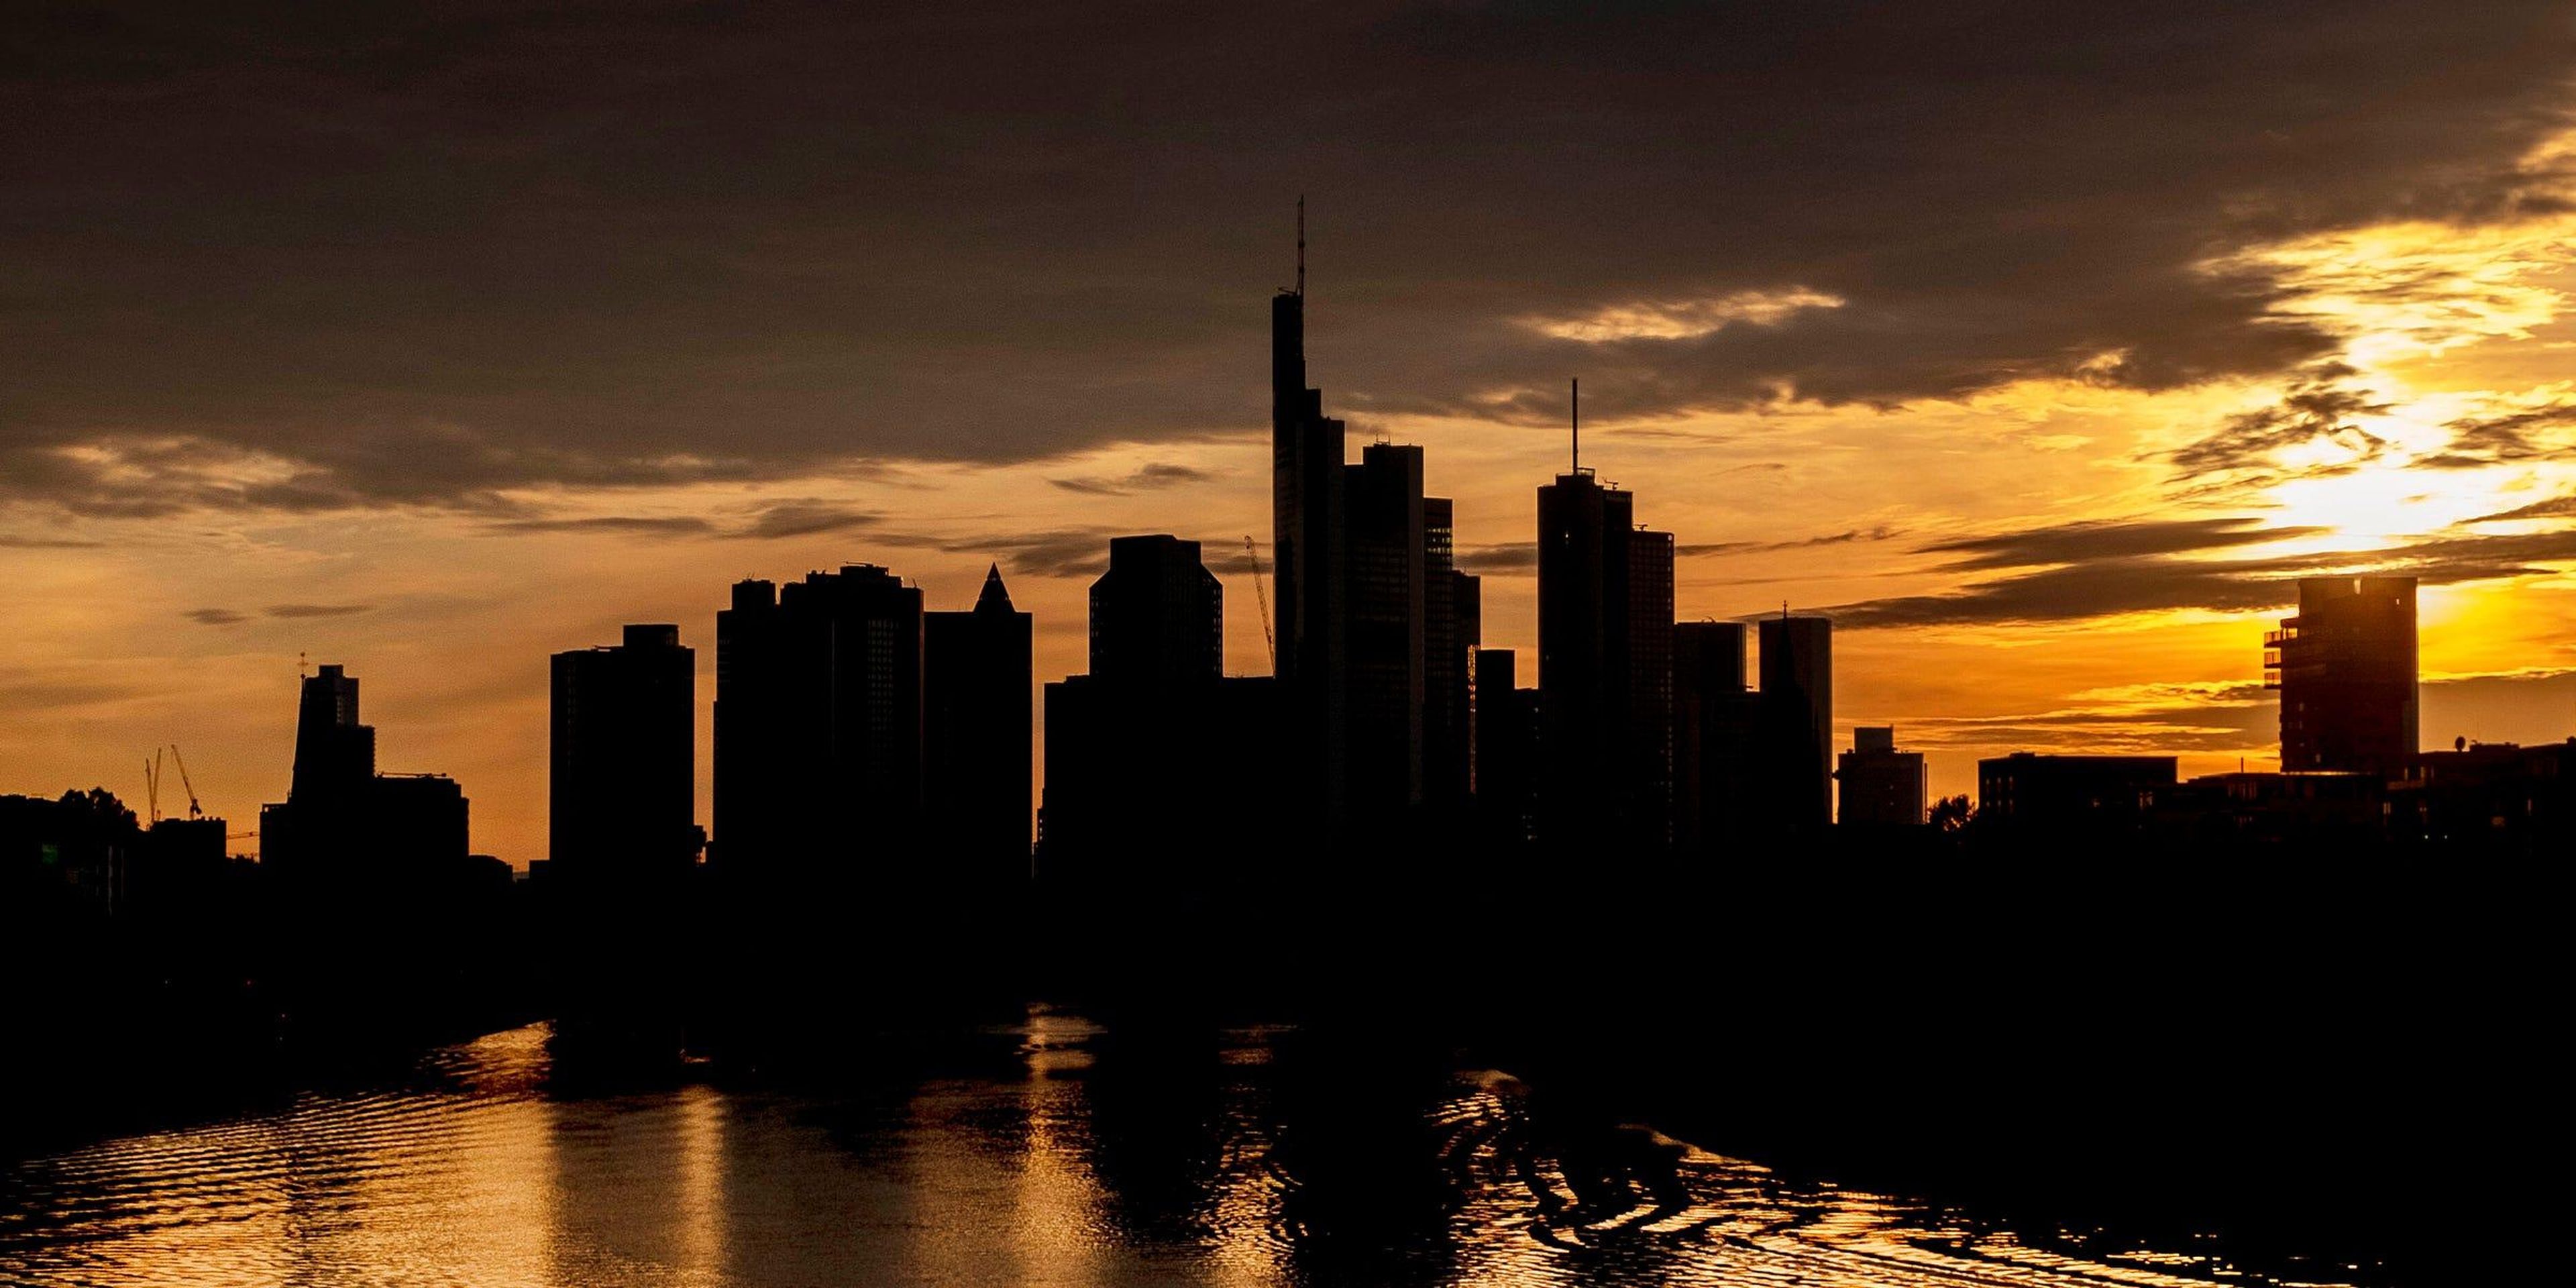 El sol se pone tras los edificios del distrito bancario de Frankfurt el 9 de mayo de 2020.